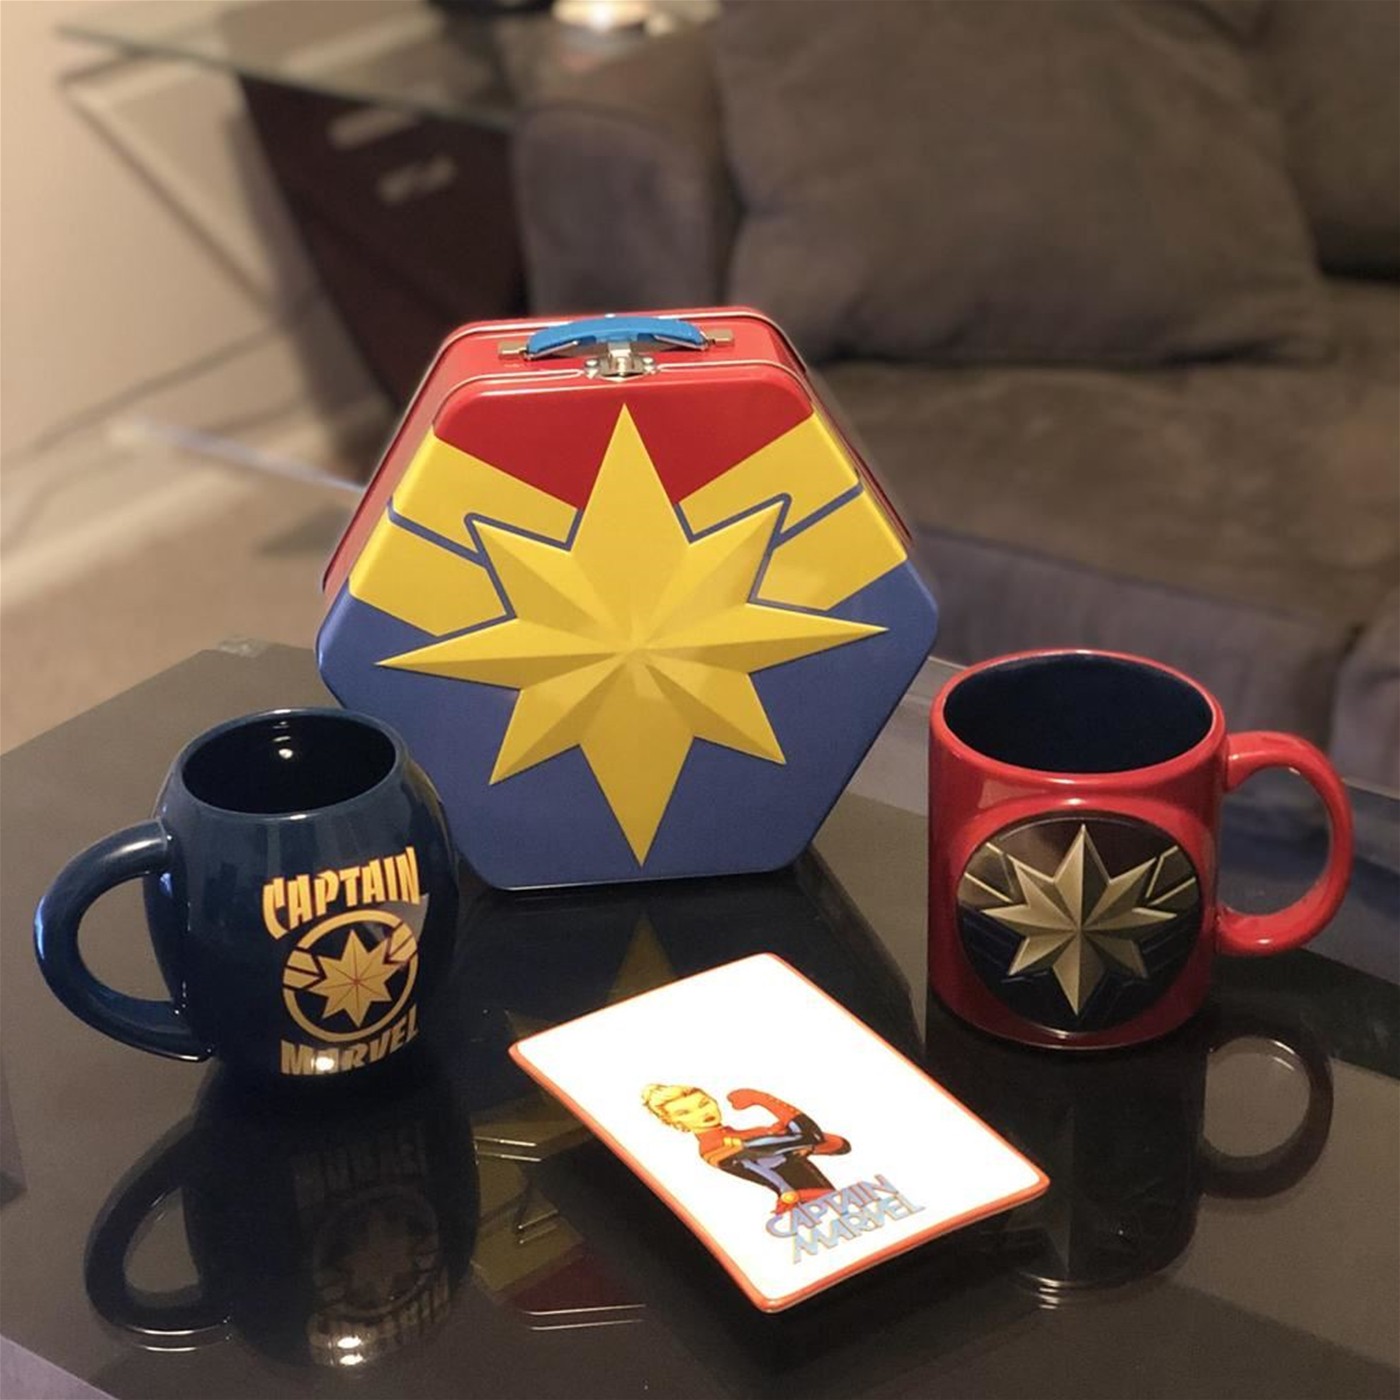 Marvel Captain Marvel Badge 20 oz. Bas Relief Ceramic Mug